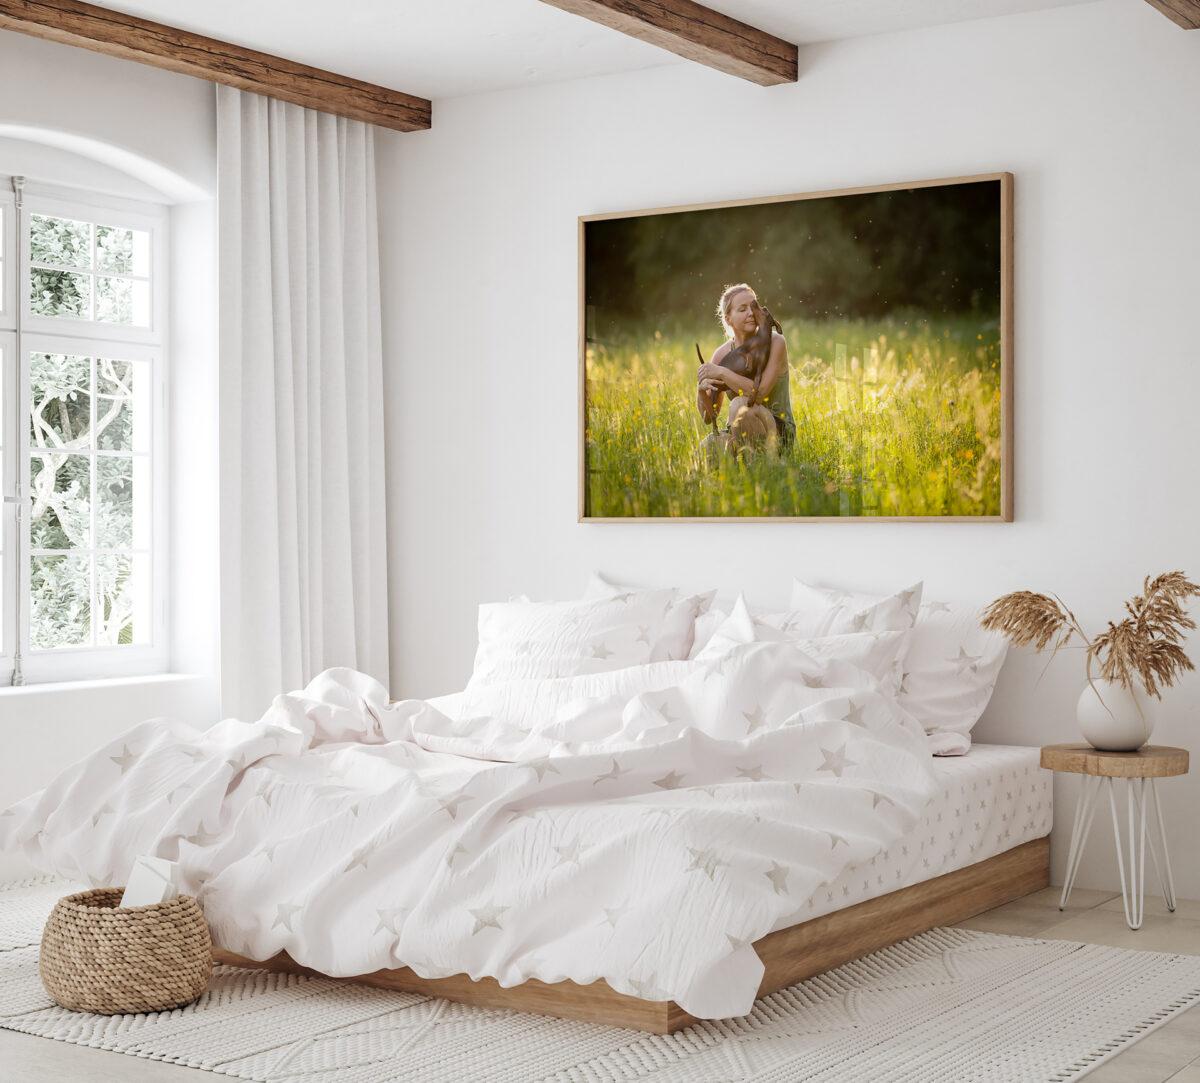 Großes Wandbild von Frau mit Hund in einem Schlafzimmer